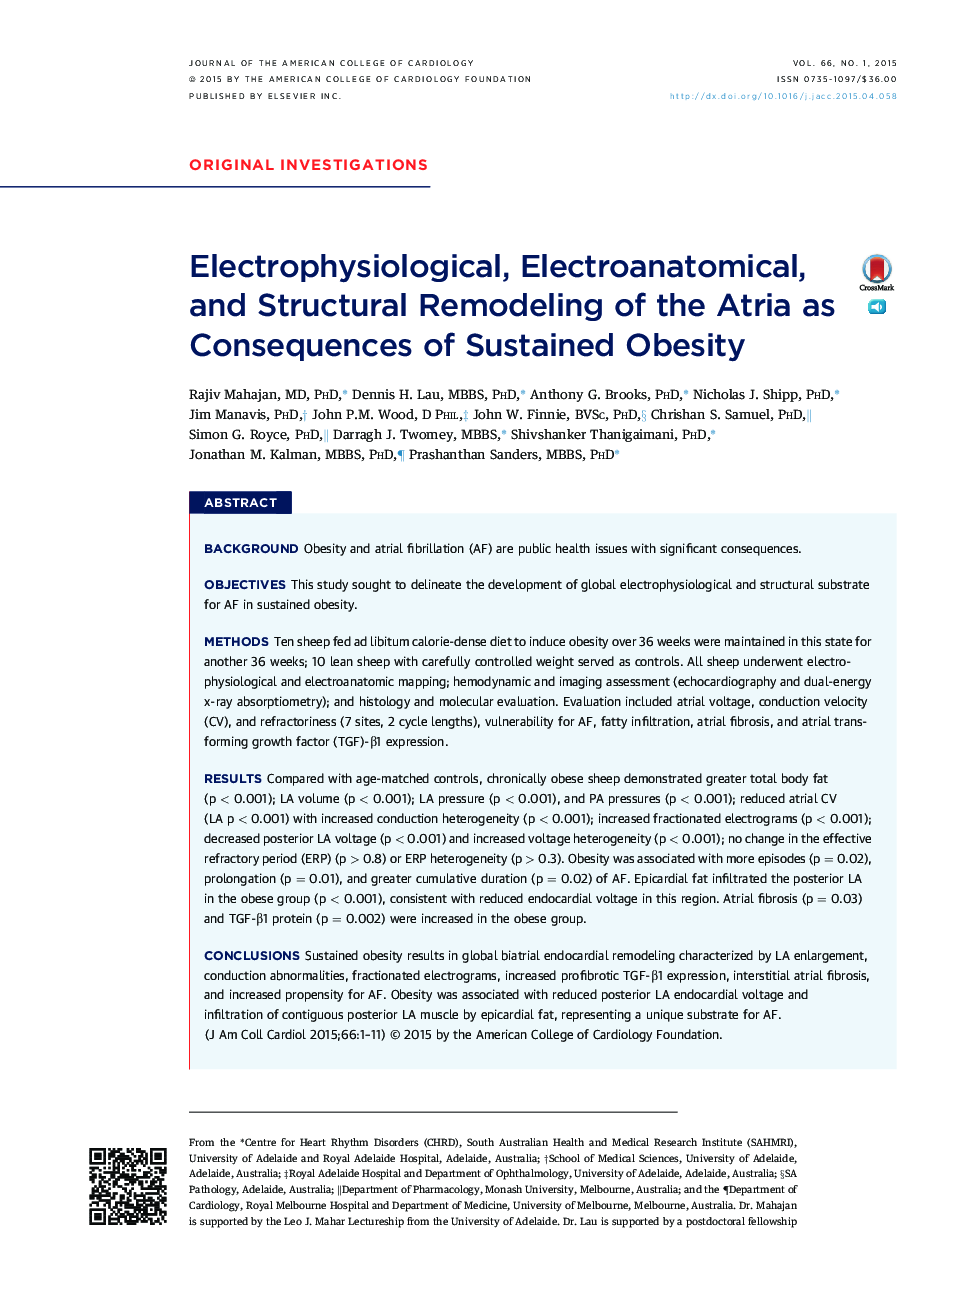 الکتروفیزیولوژی، الکتروآنا شناسی و بازسازی سازه اتیلی به عنوان نتیجه چاقی پایدار 